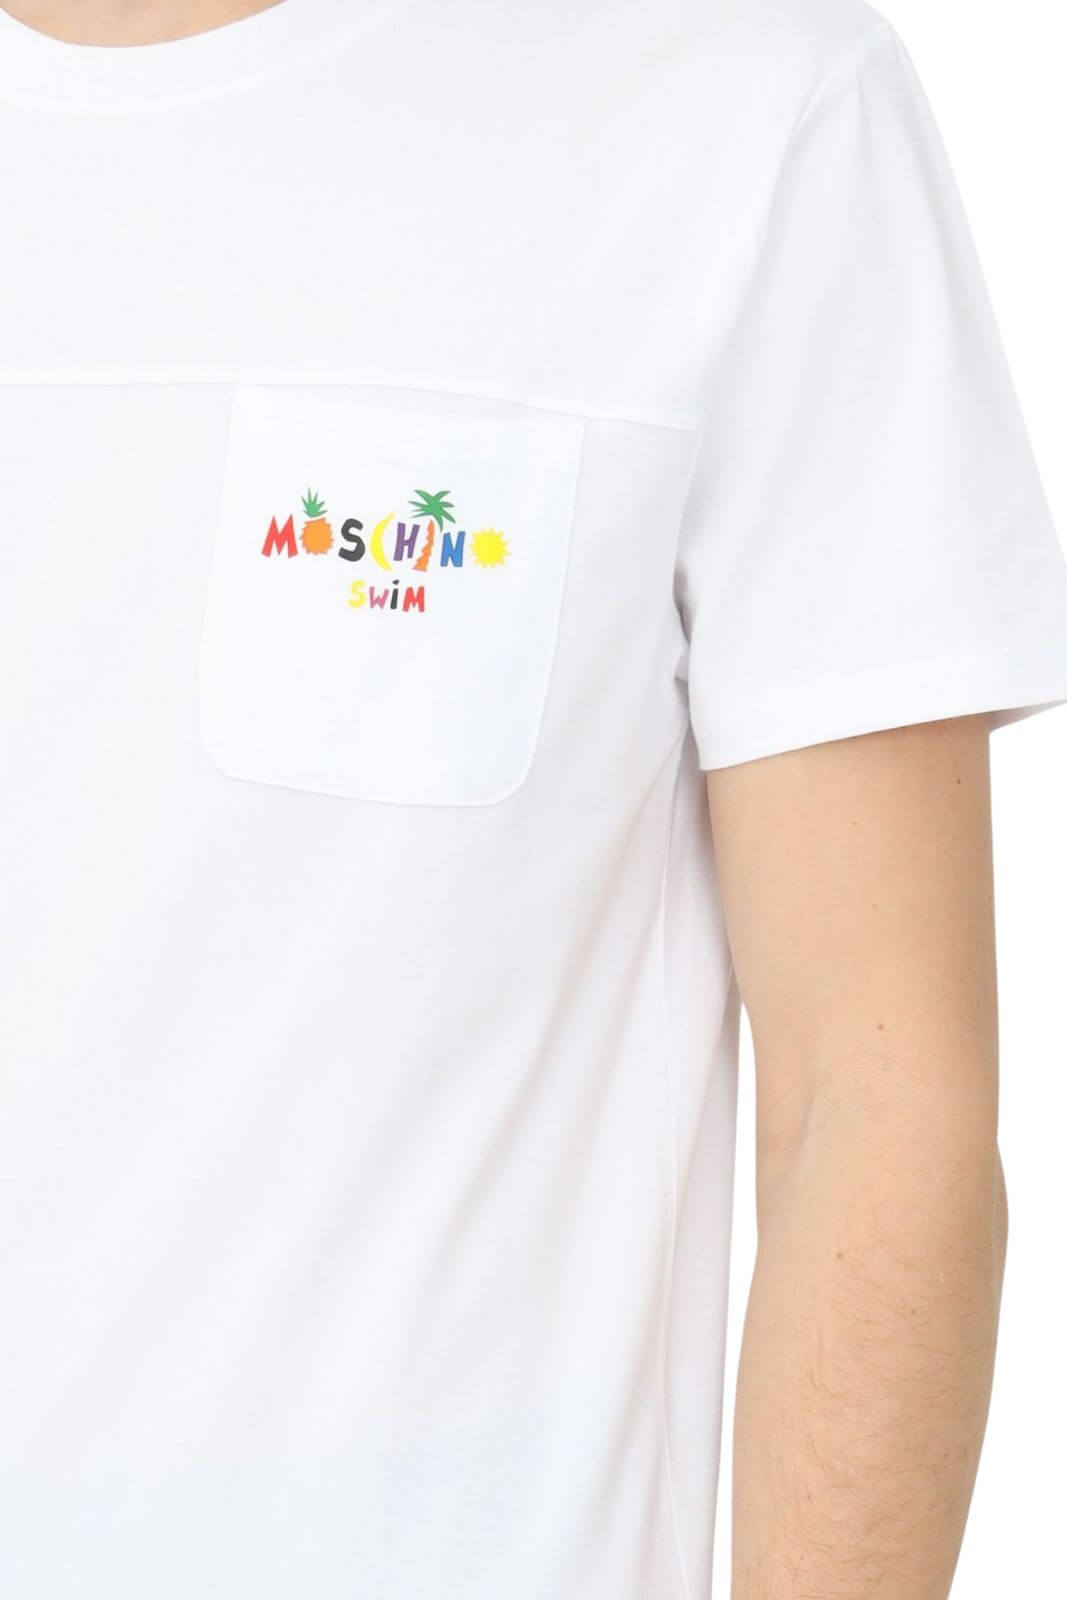 Moschino Swim T-shirt Uomo in jersey